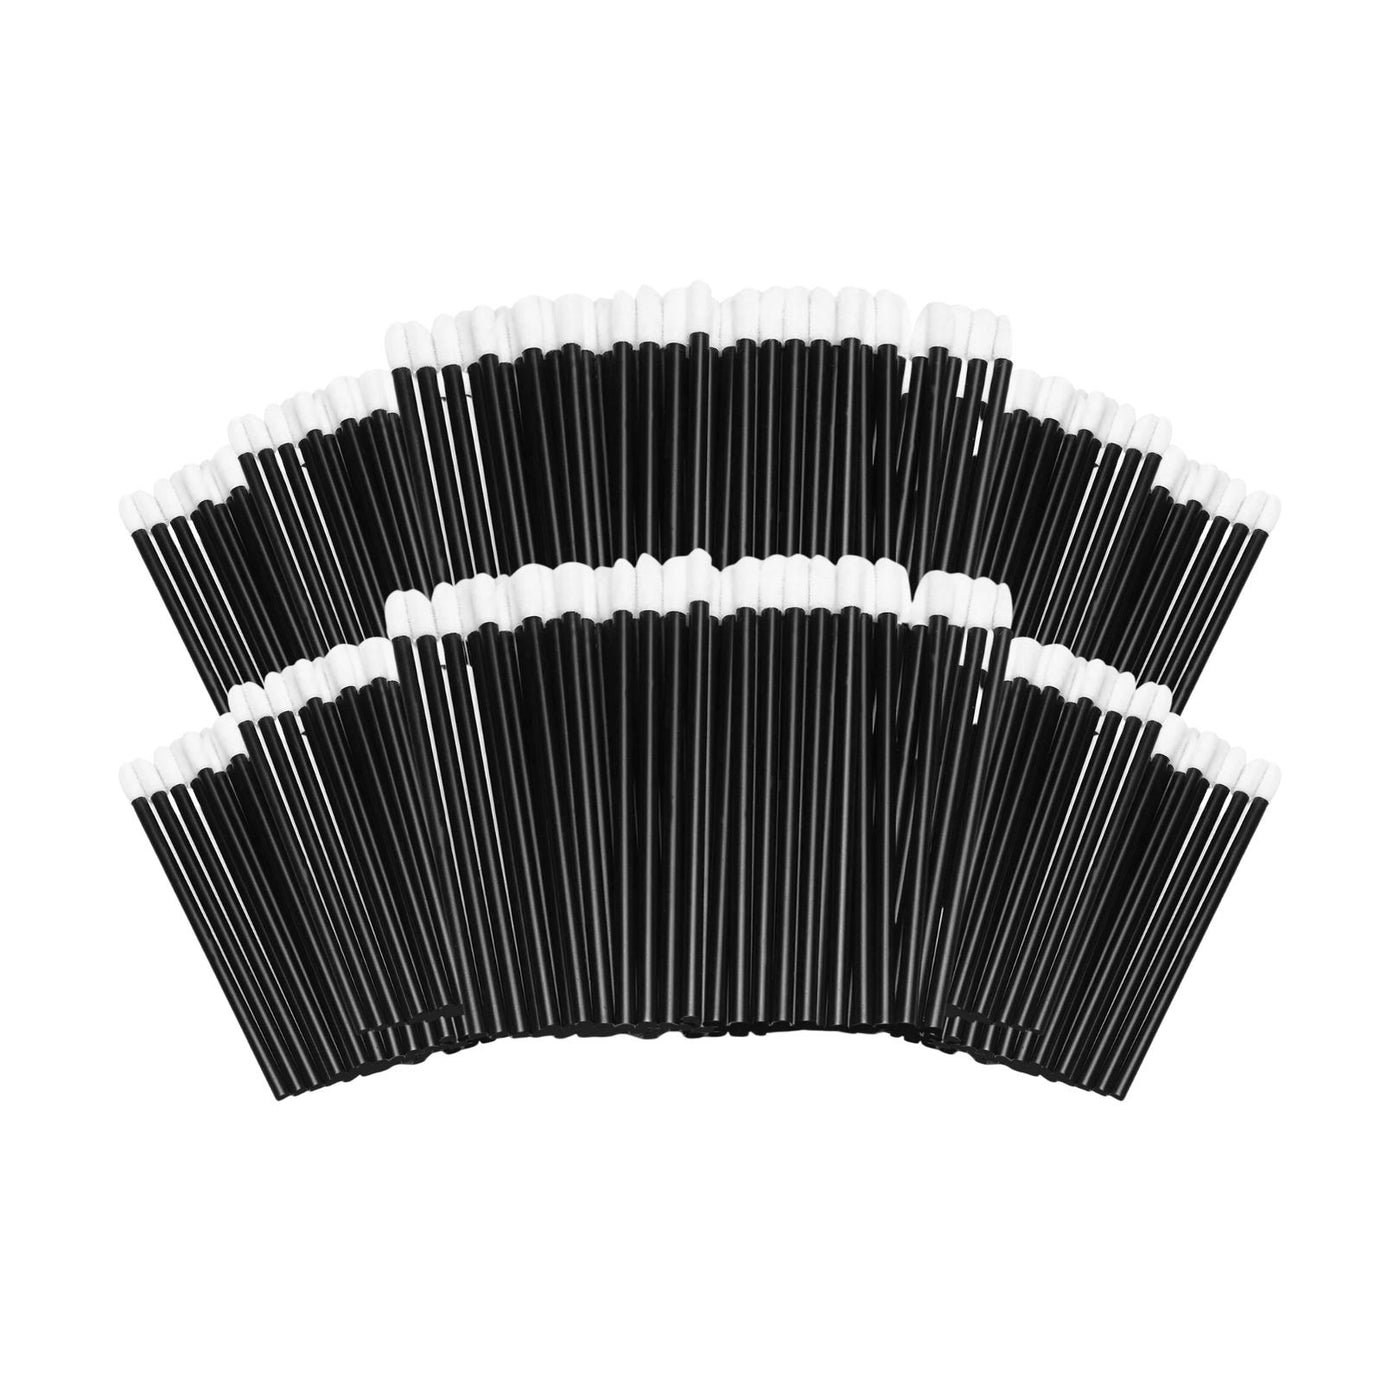 Flocked Applicator Brushes for Eyelash Extension Black - 10 Pack